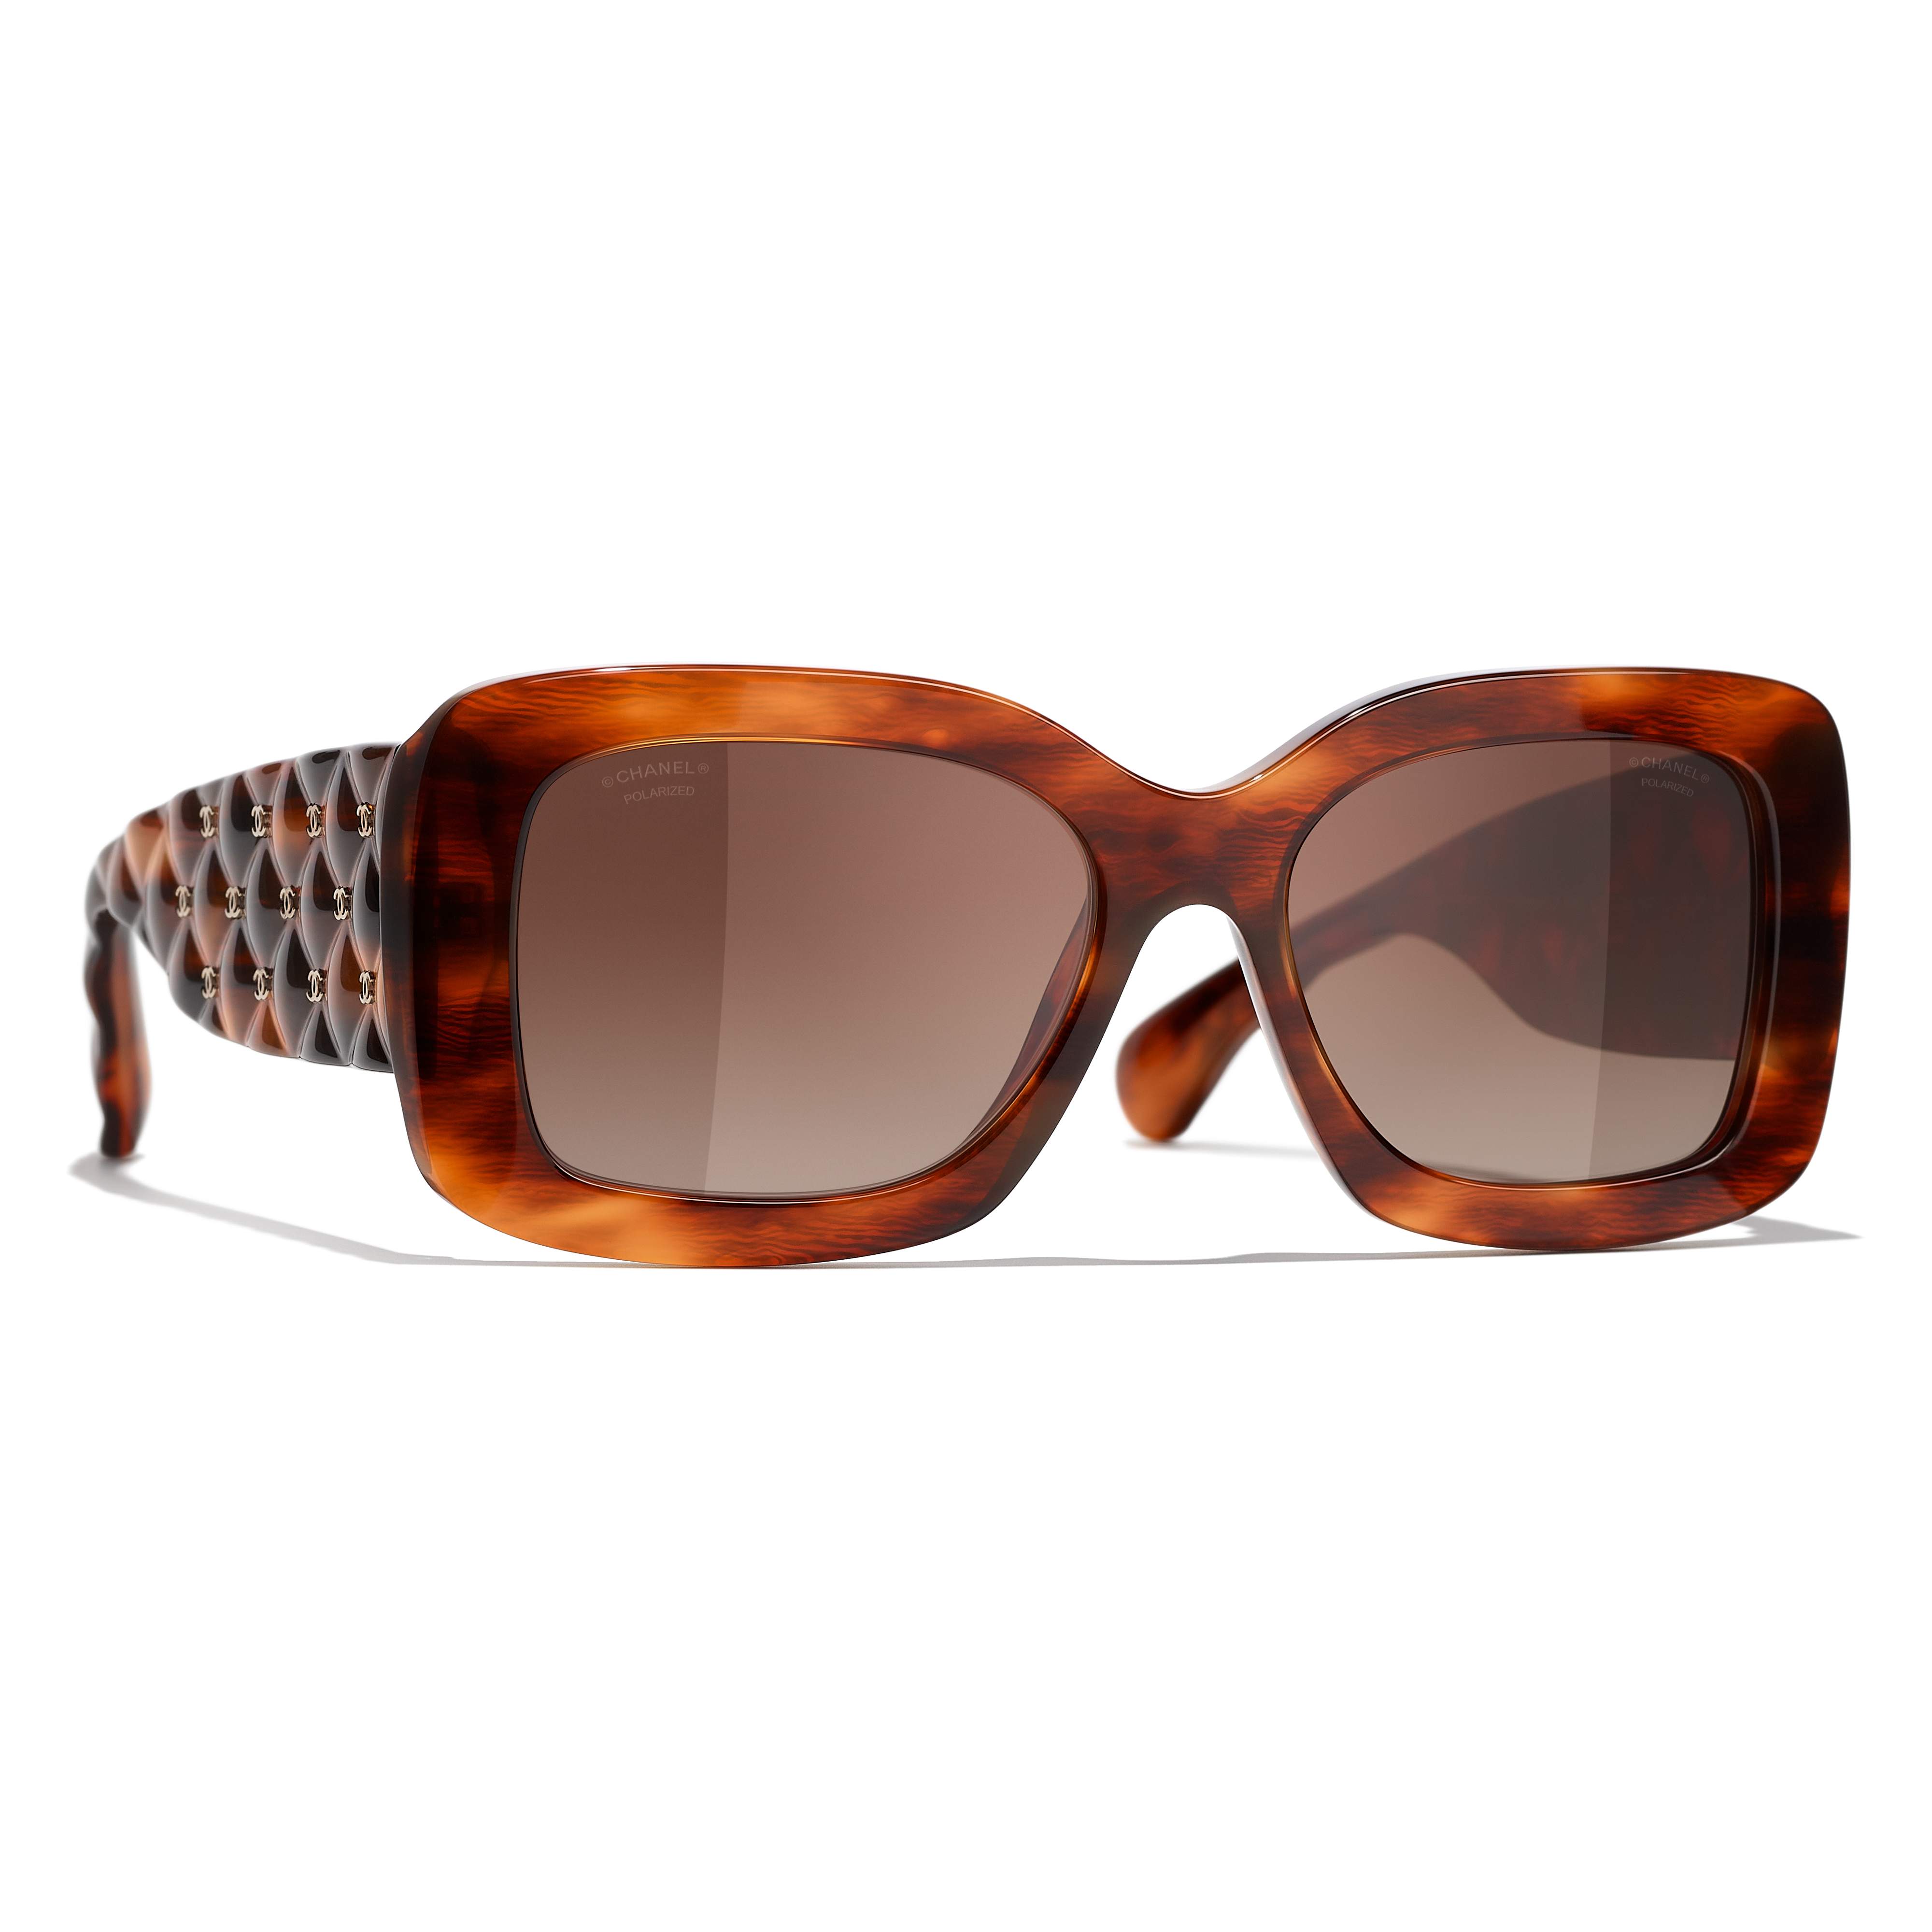 Sunglasses CHANEL CH5483 1077/S9 54-17 Striped Havana in stock